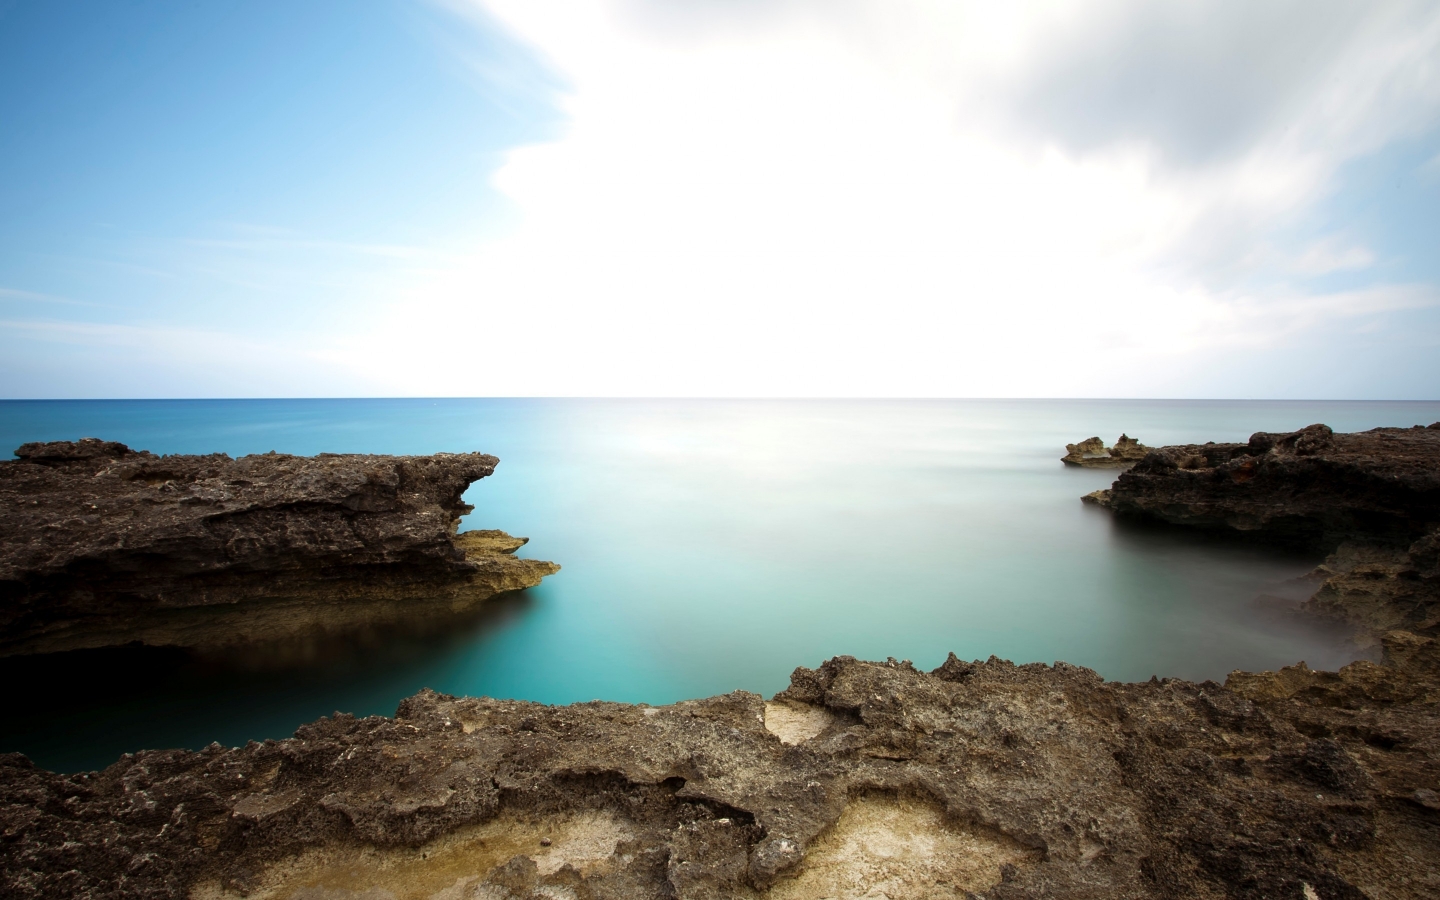 Calm Sea Landscape for 1440 x 900 widescreen resolution